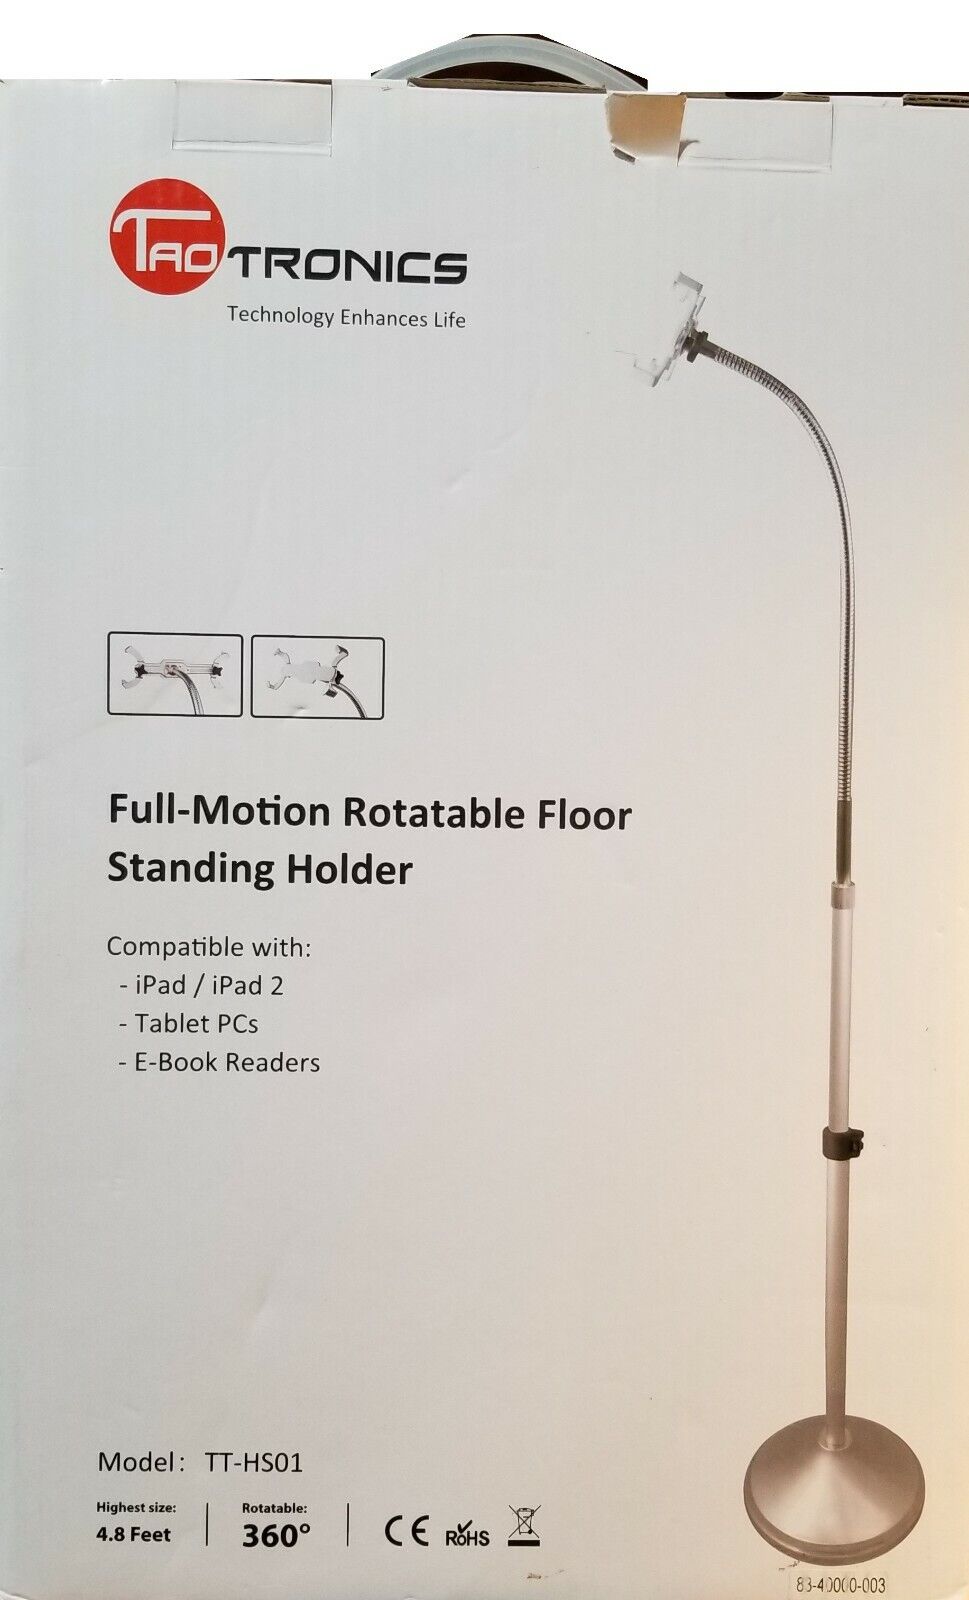 TaoTronics Full-Motion Rotatable Floor Standing Holder for Tablets, E-Books, iPa